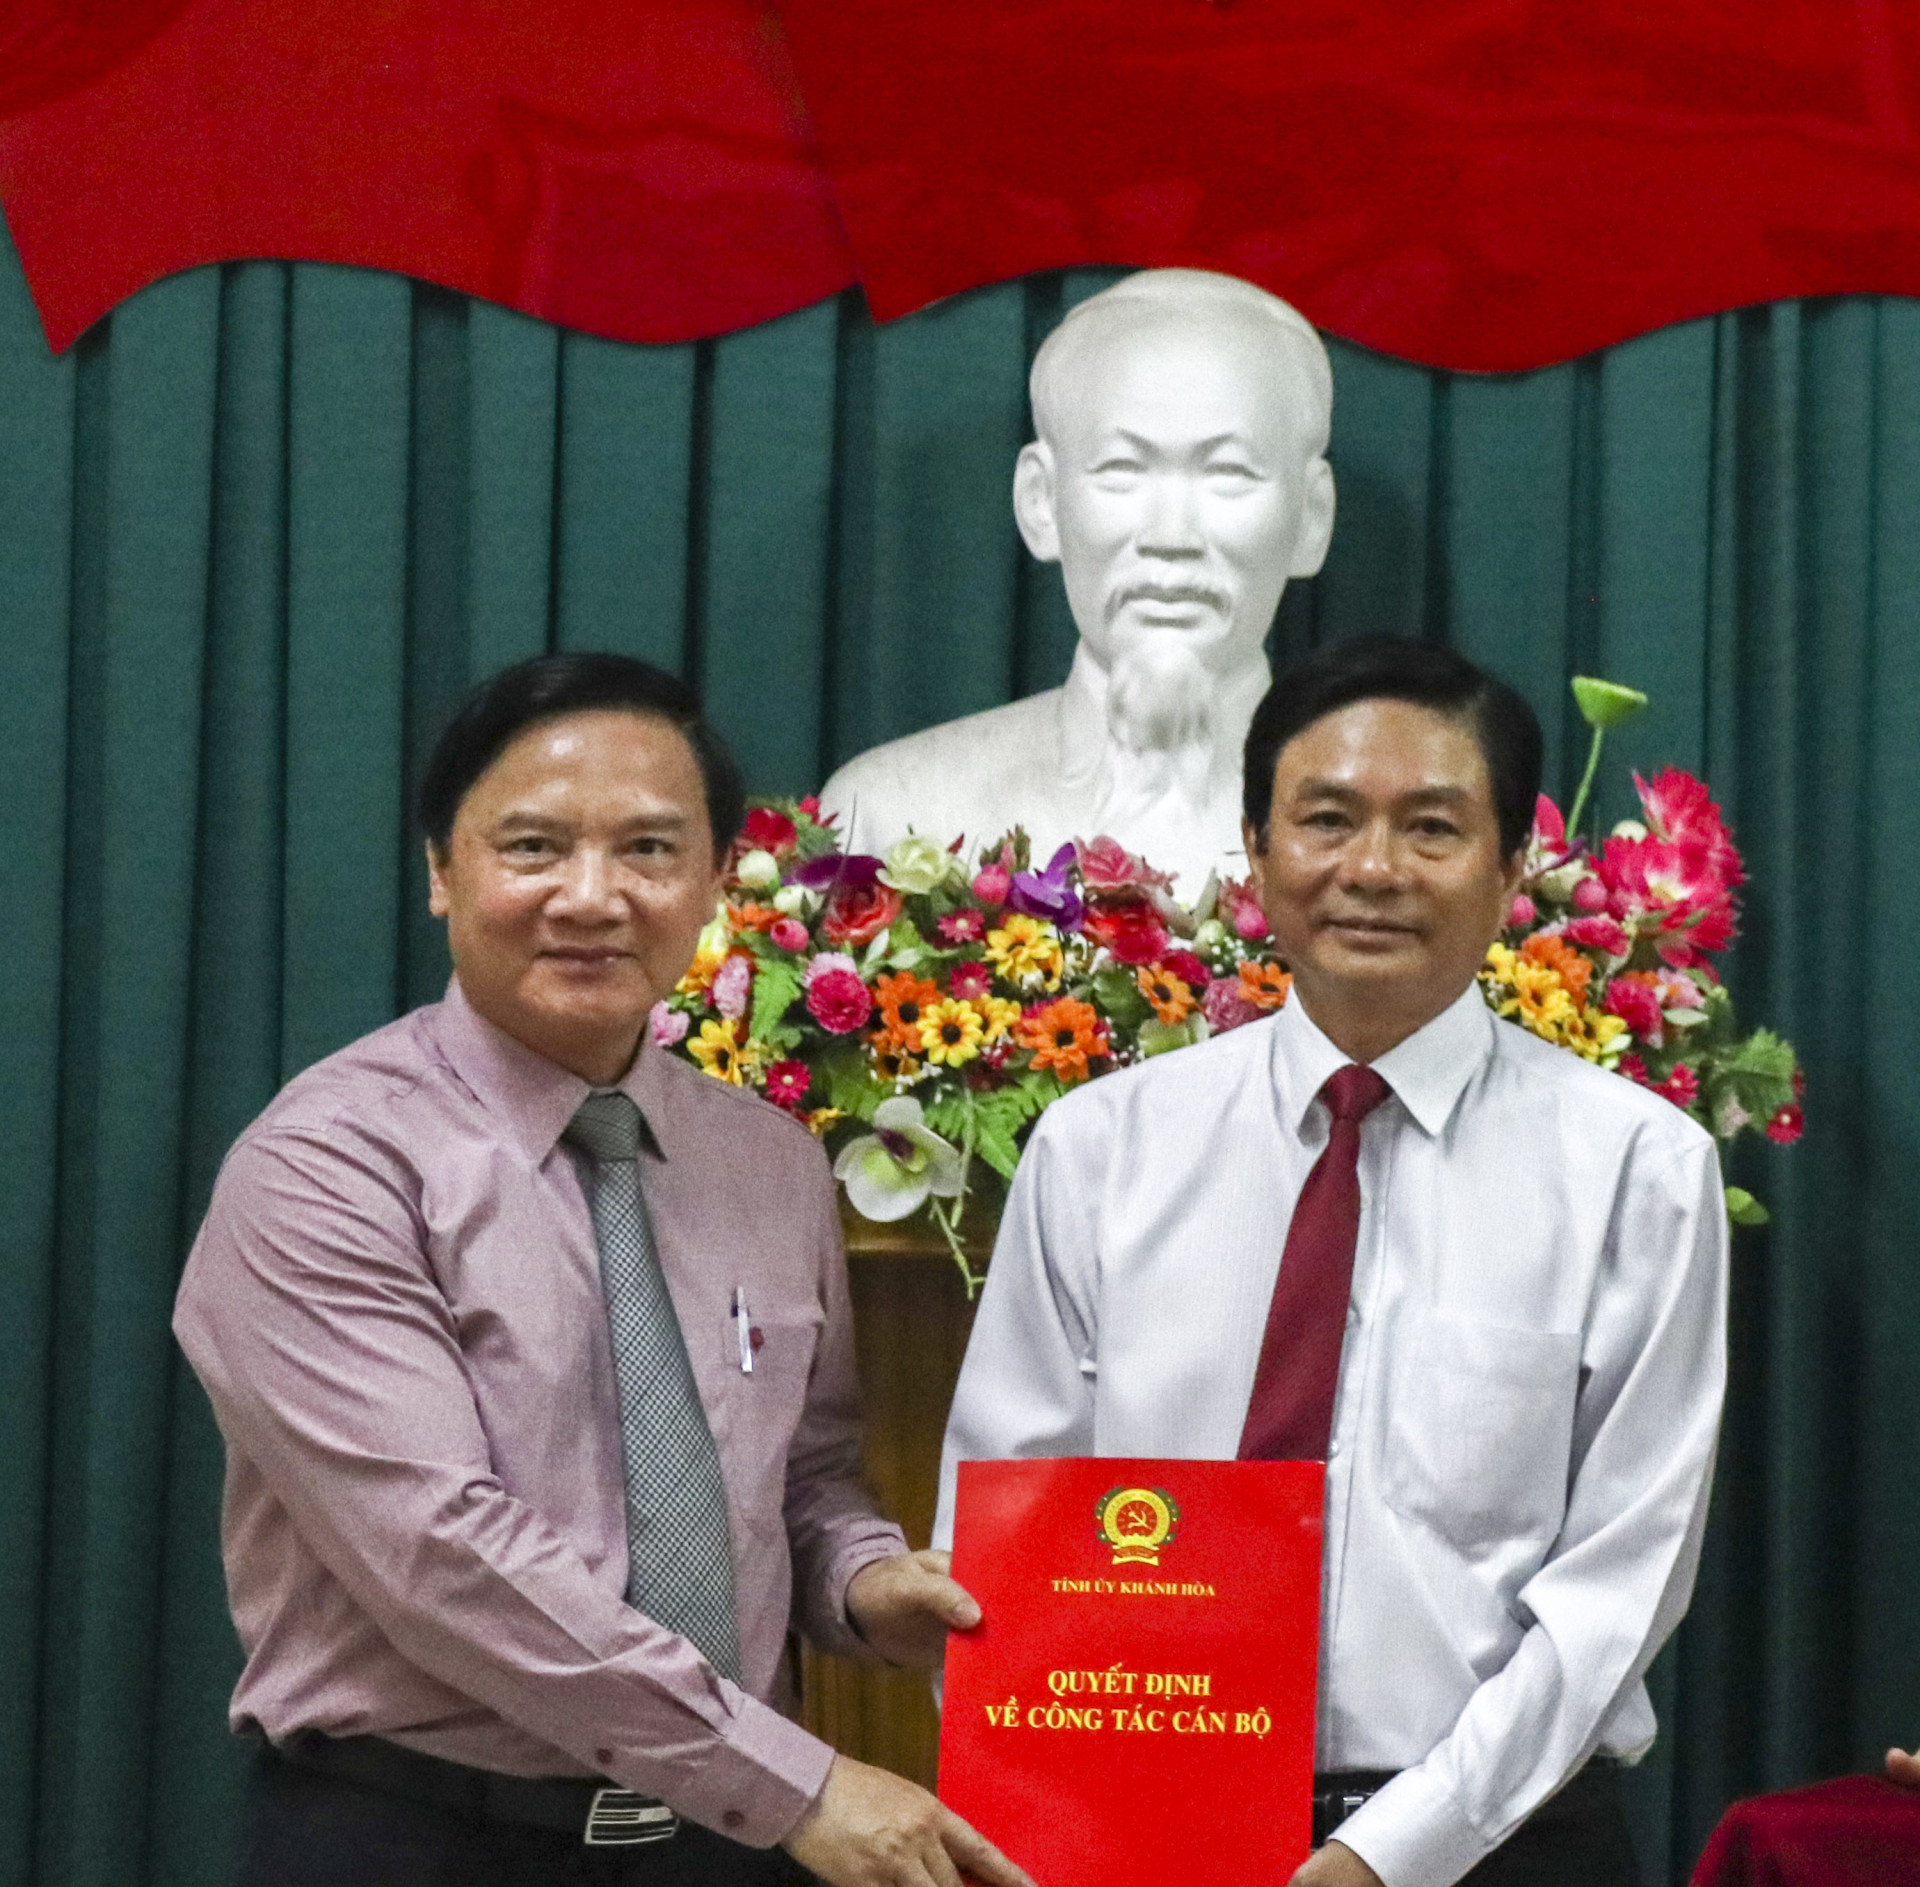 ông Nguyễn Khắc Định (bìa trái) trao quyết định cho ông Lữ Thanh Hải.